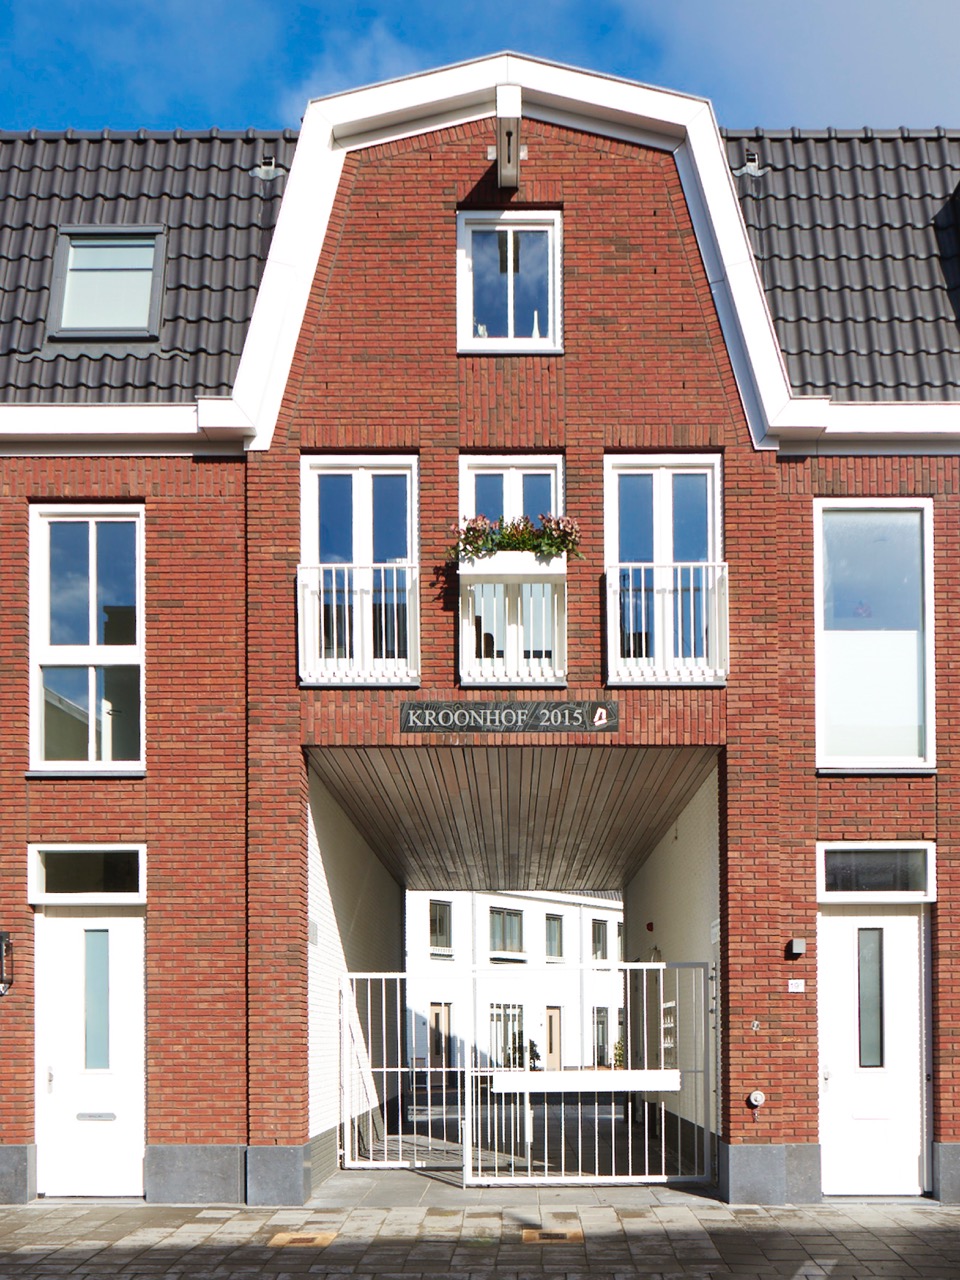 ENZO architectuur N interieur - Haarlemmermeer - Silo - Burgerveen - nieuwbouw - zakelijk - woonblok - woonwijk - hofje - hofwoningen - Haarlem